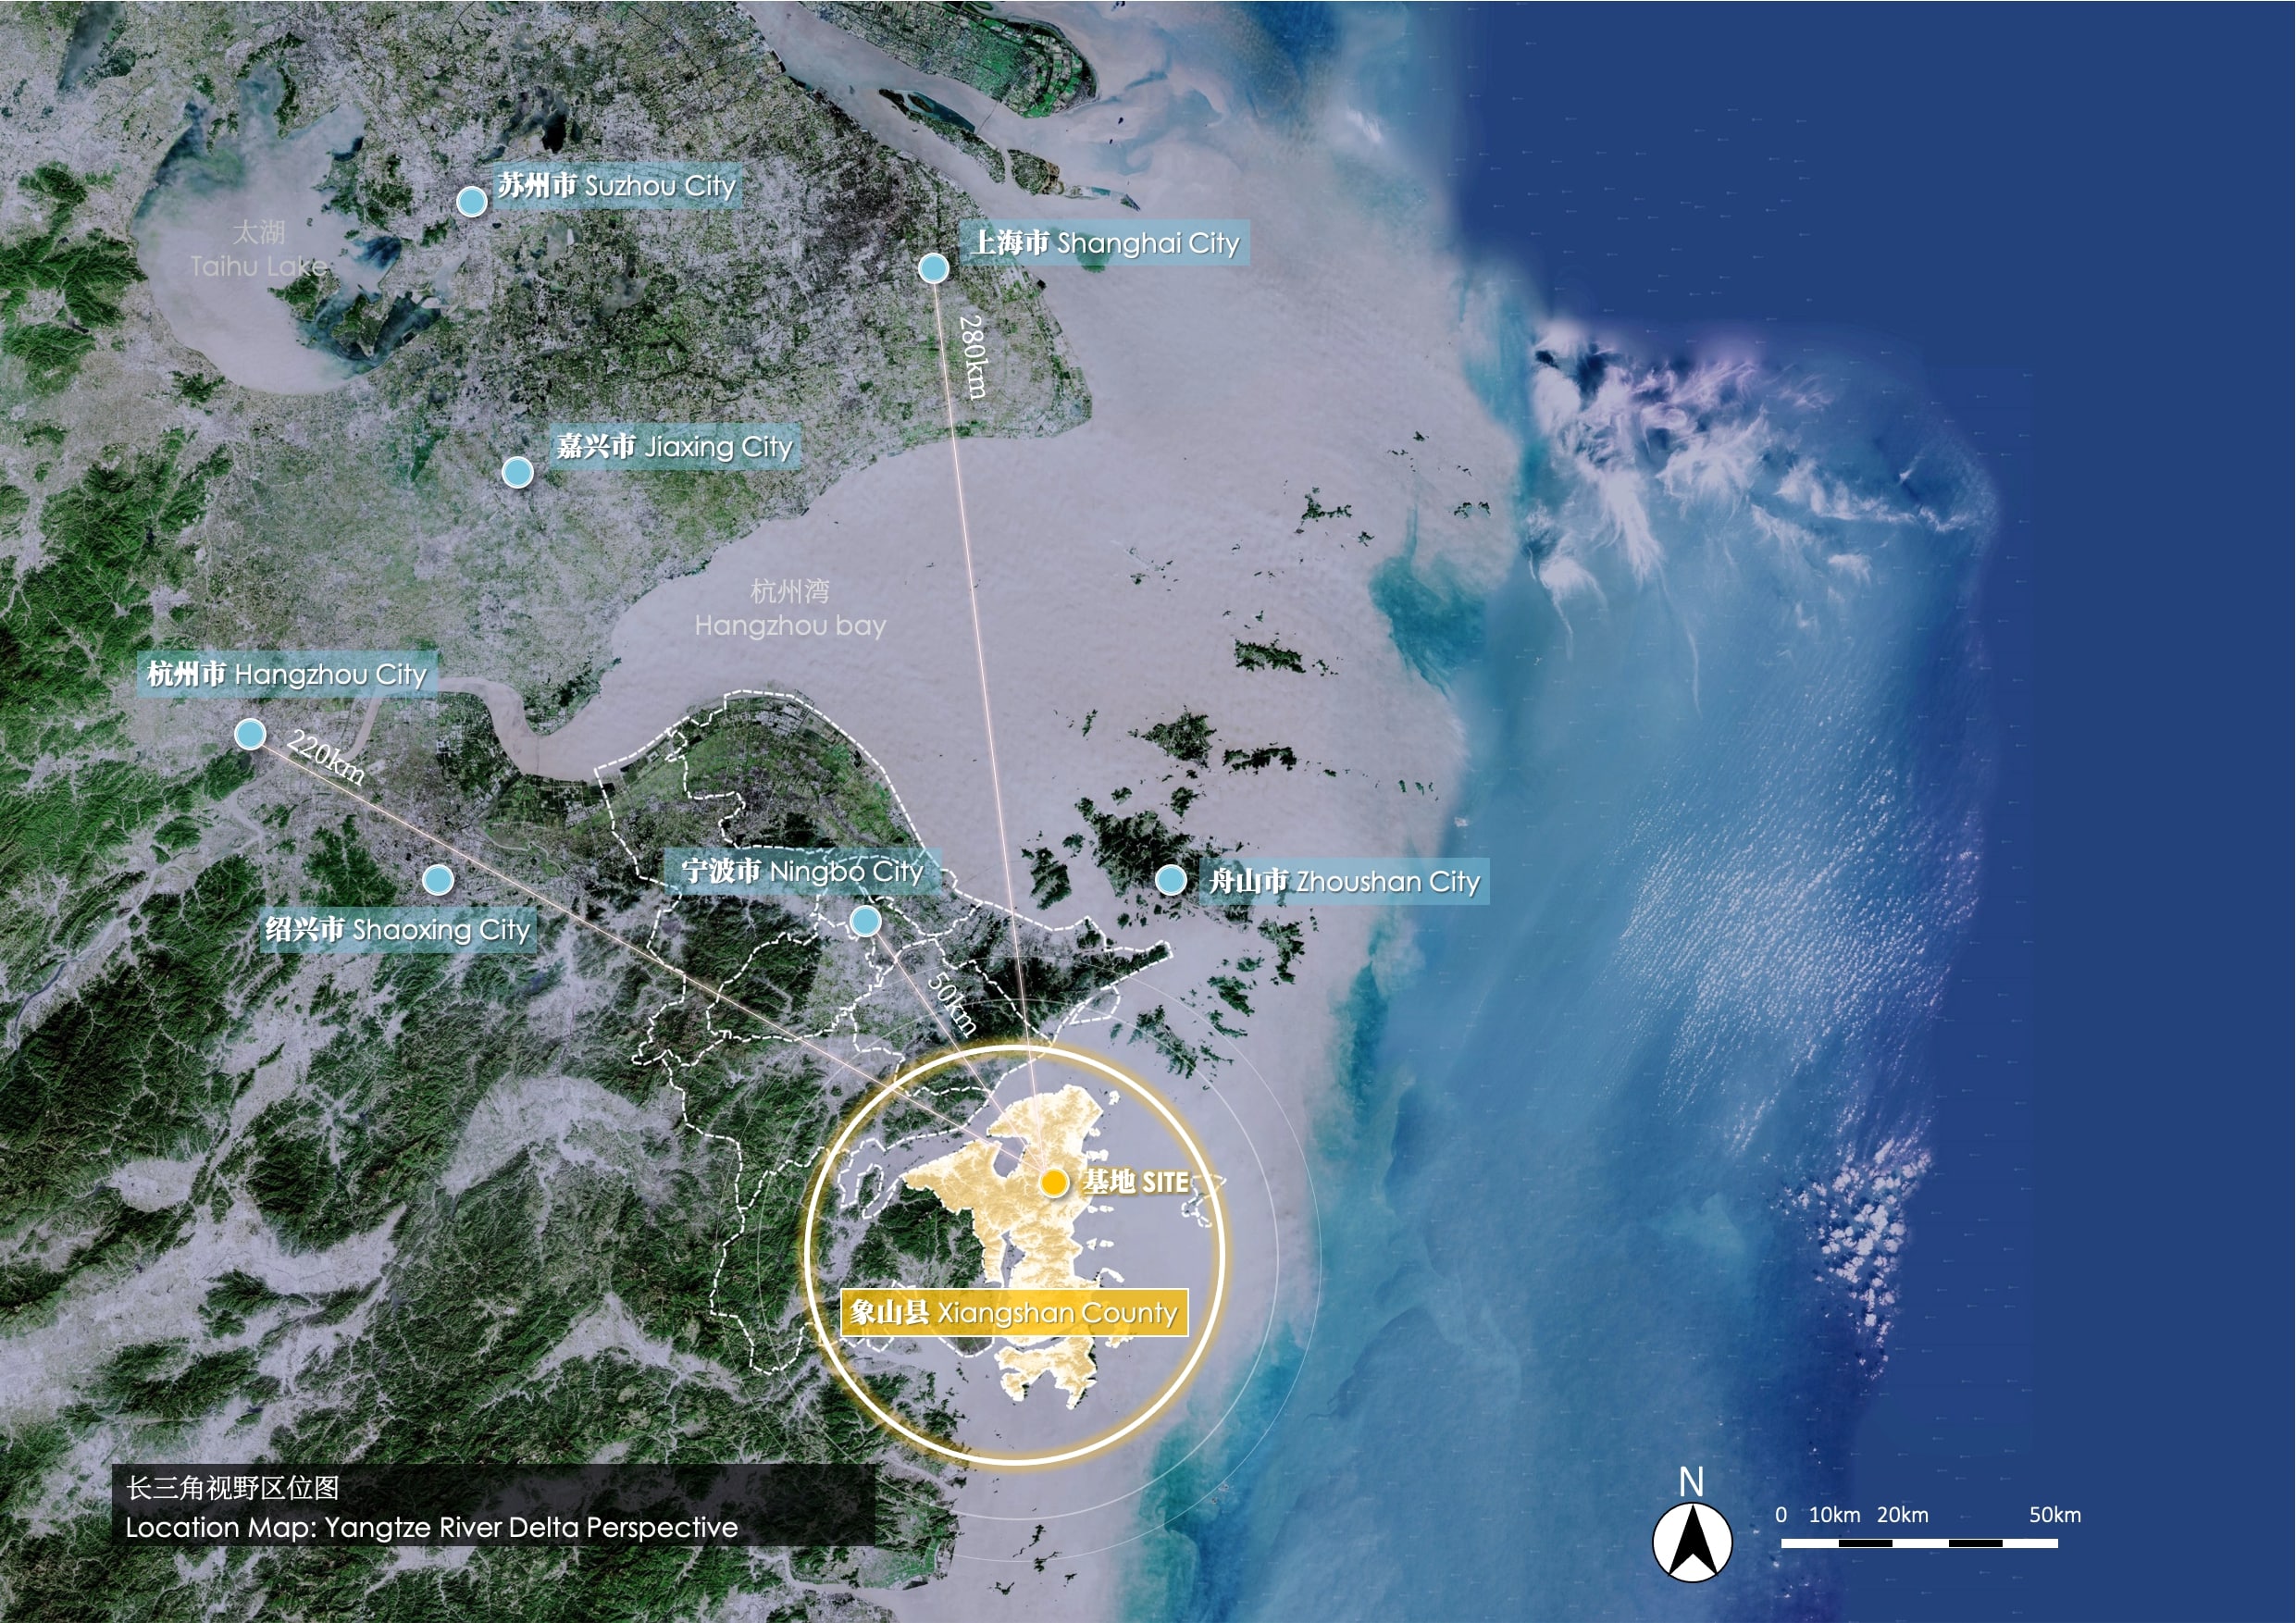 05 长三角视野区位图 Location Map-Yangtze River Delta Perspective.jpeg